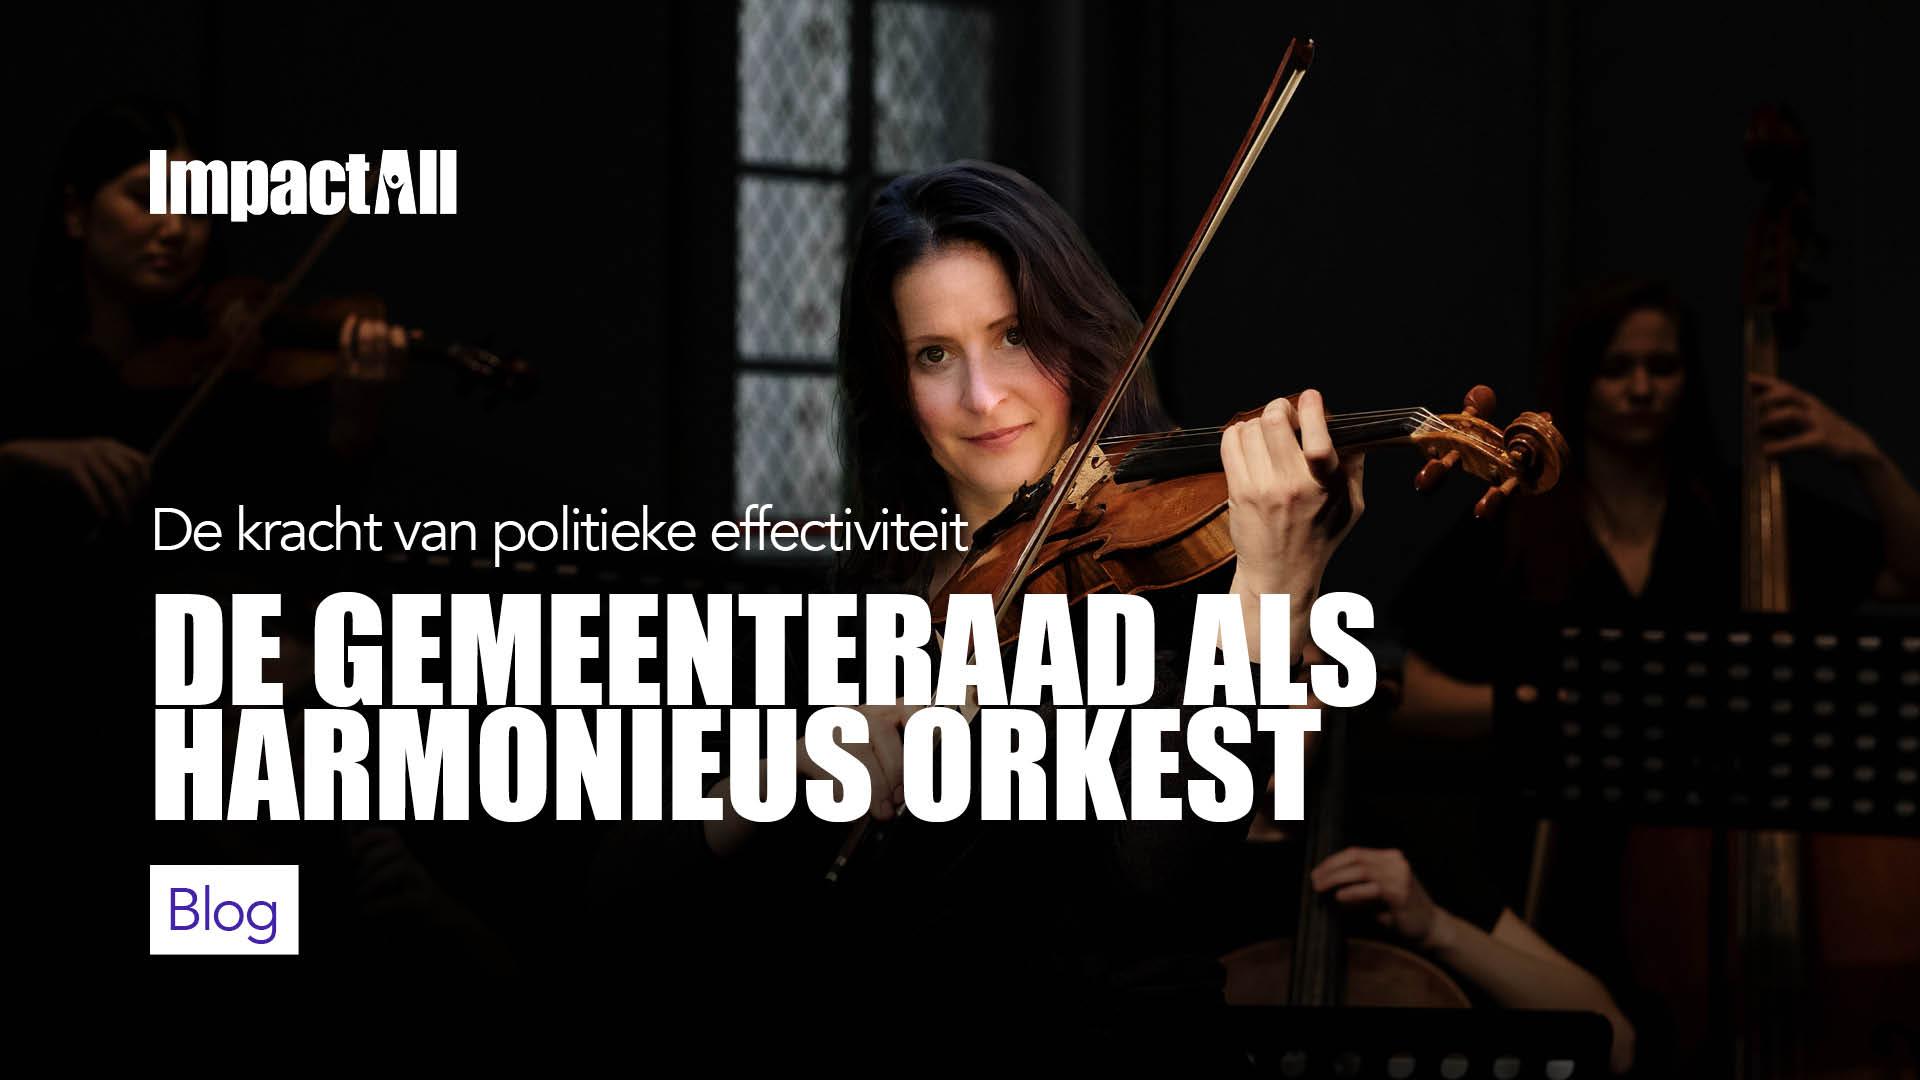 Ilona Eichhorn als violiste in orkest titelplaatje voor blog: Politieke effectiviteit - De gemeenteraad als harmonieus orkest